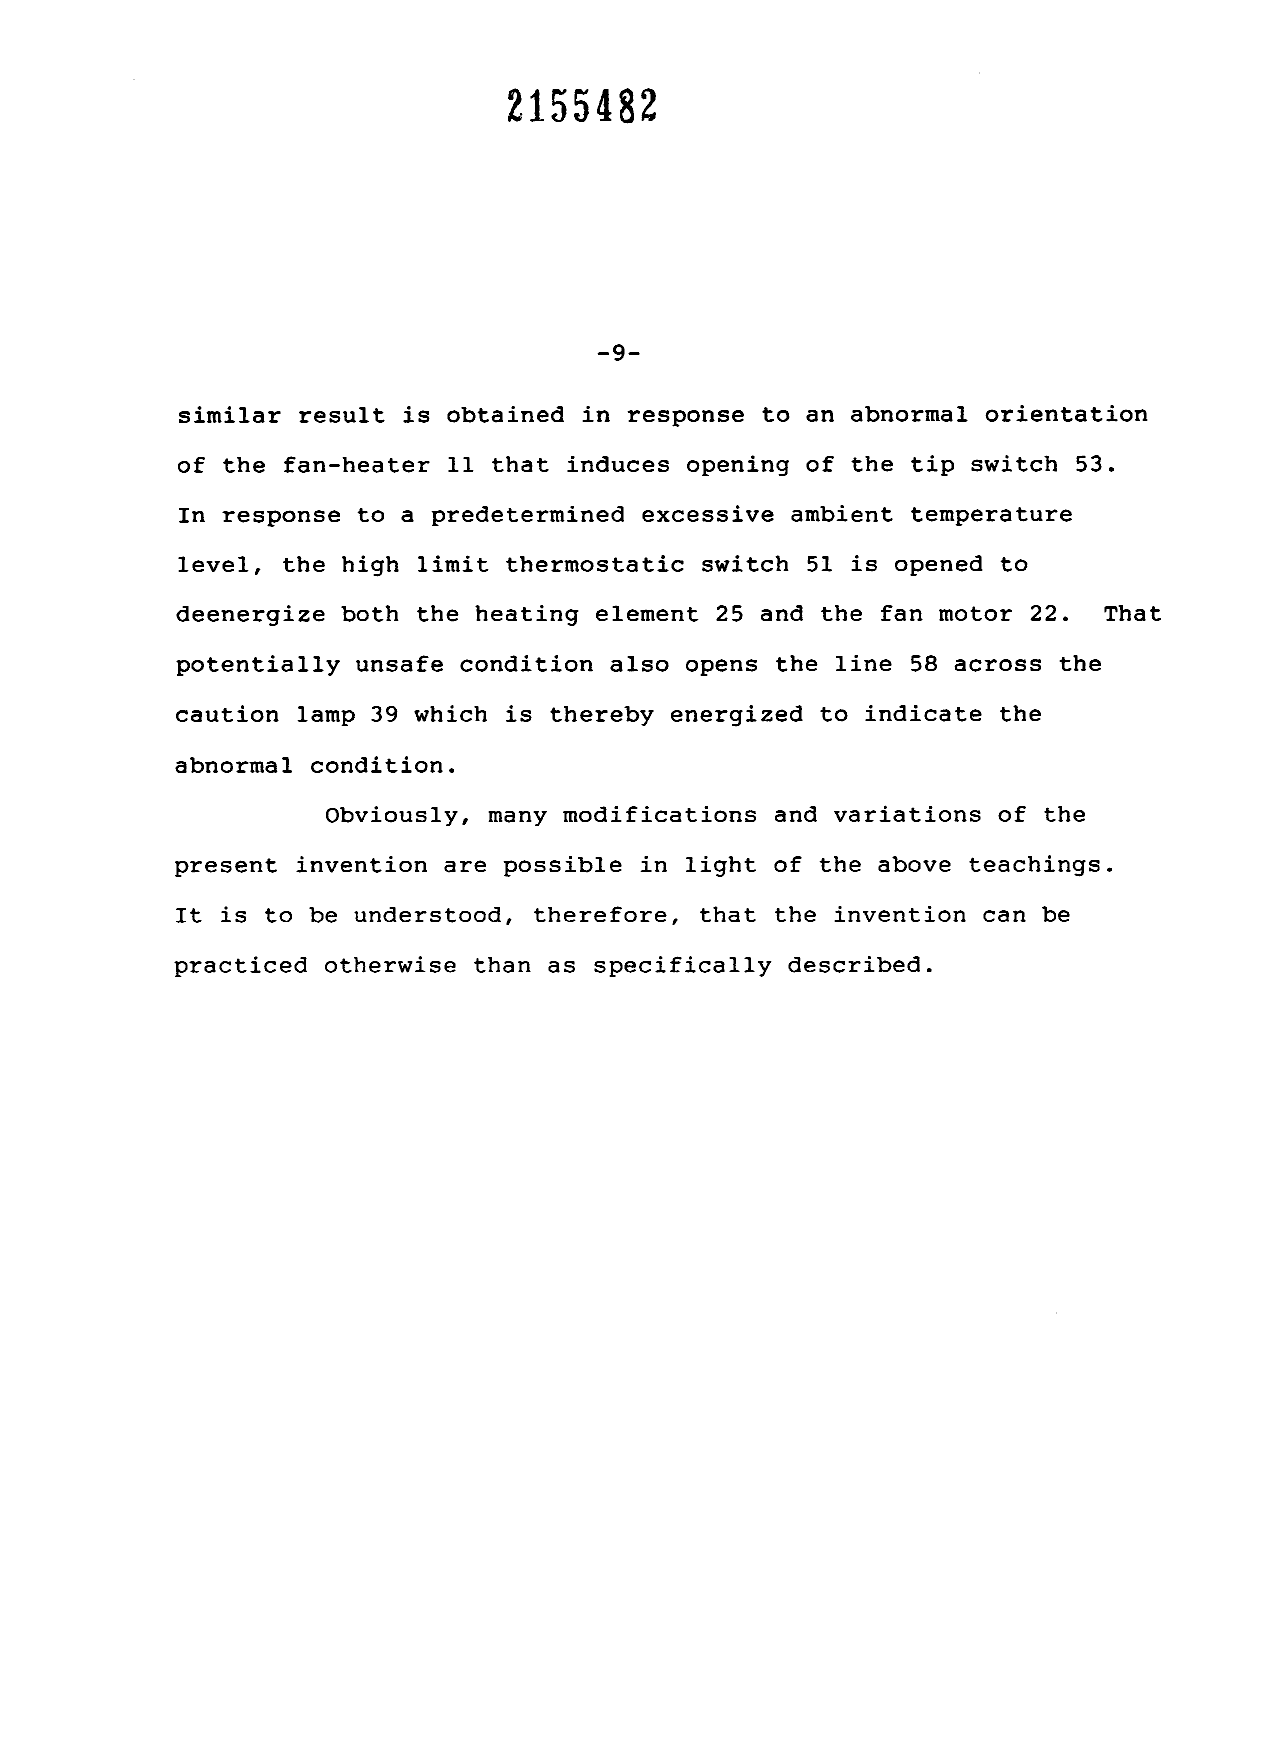 Canadian Patent Document 2155482. Description 19951228. Image 8 of 8